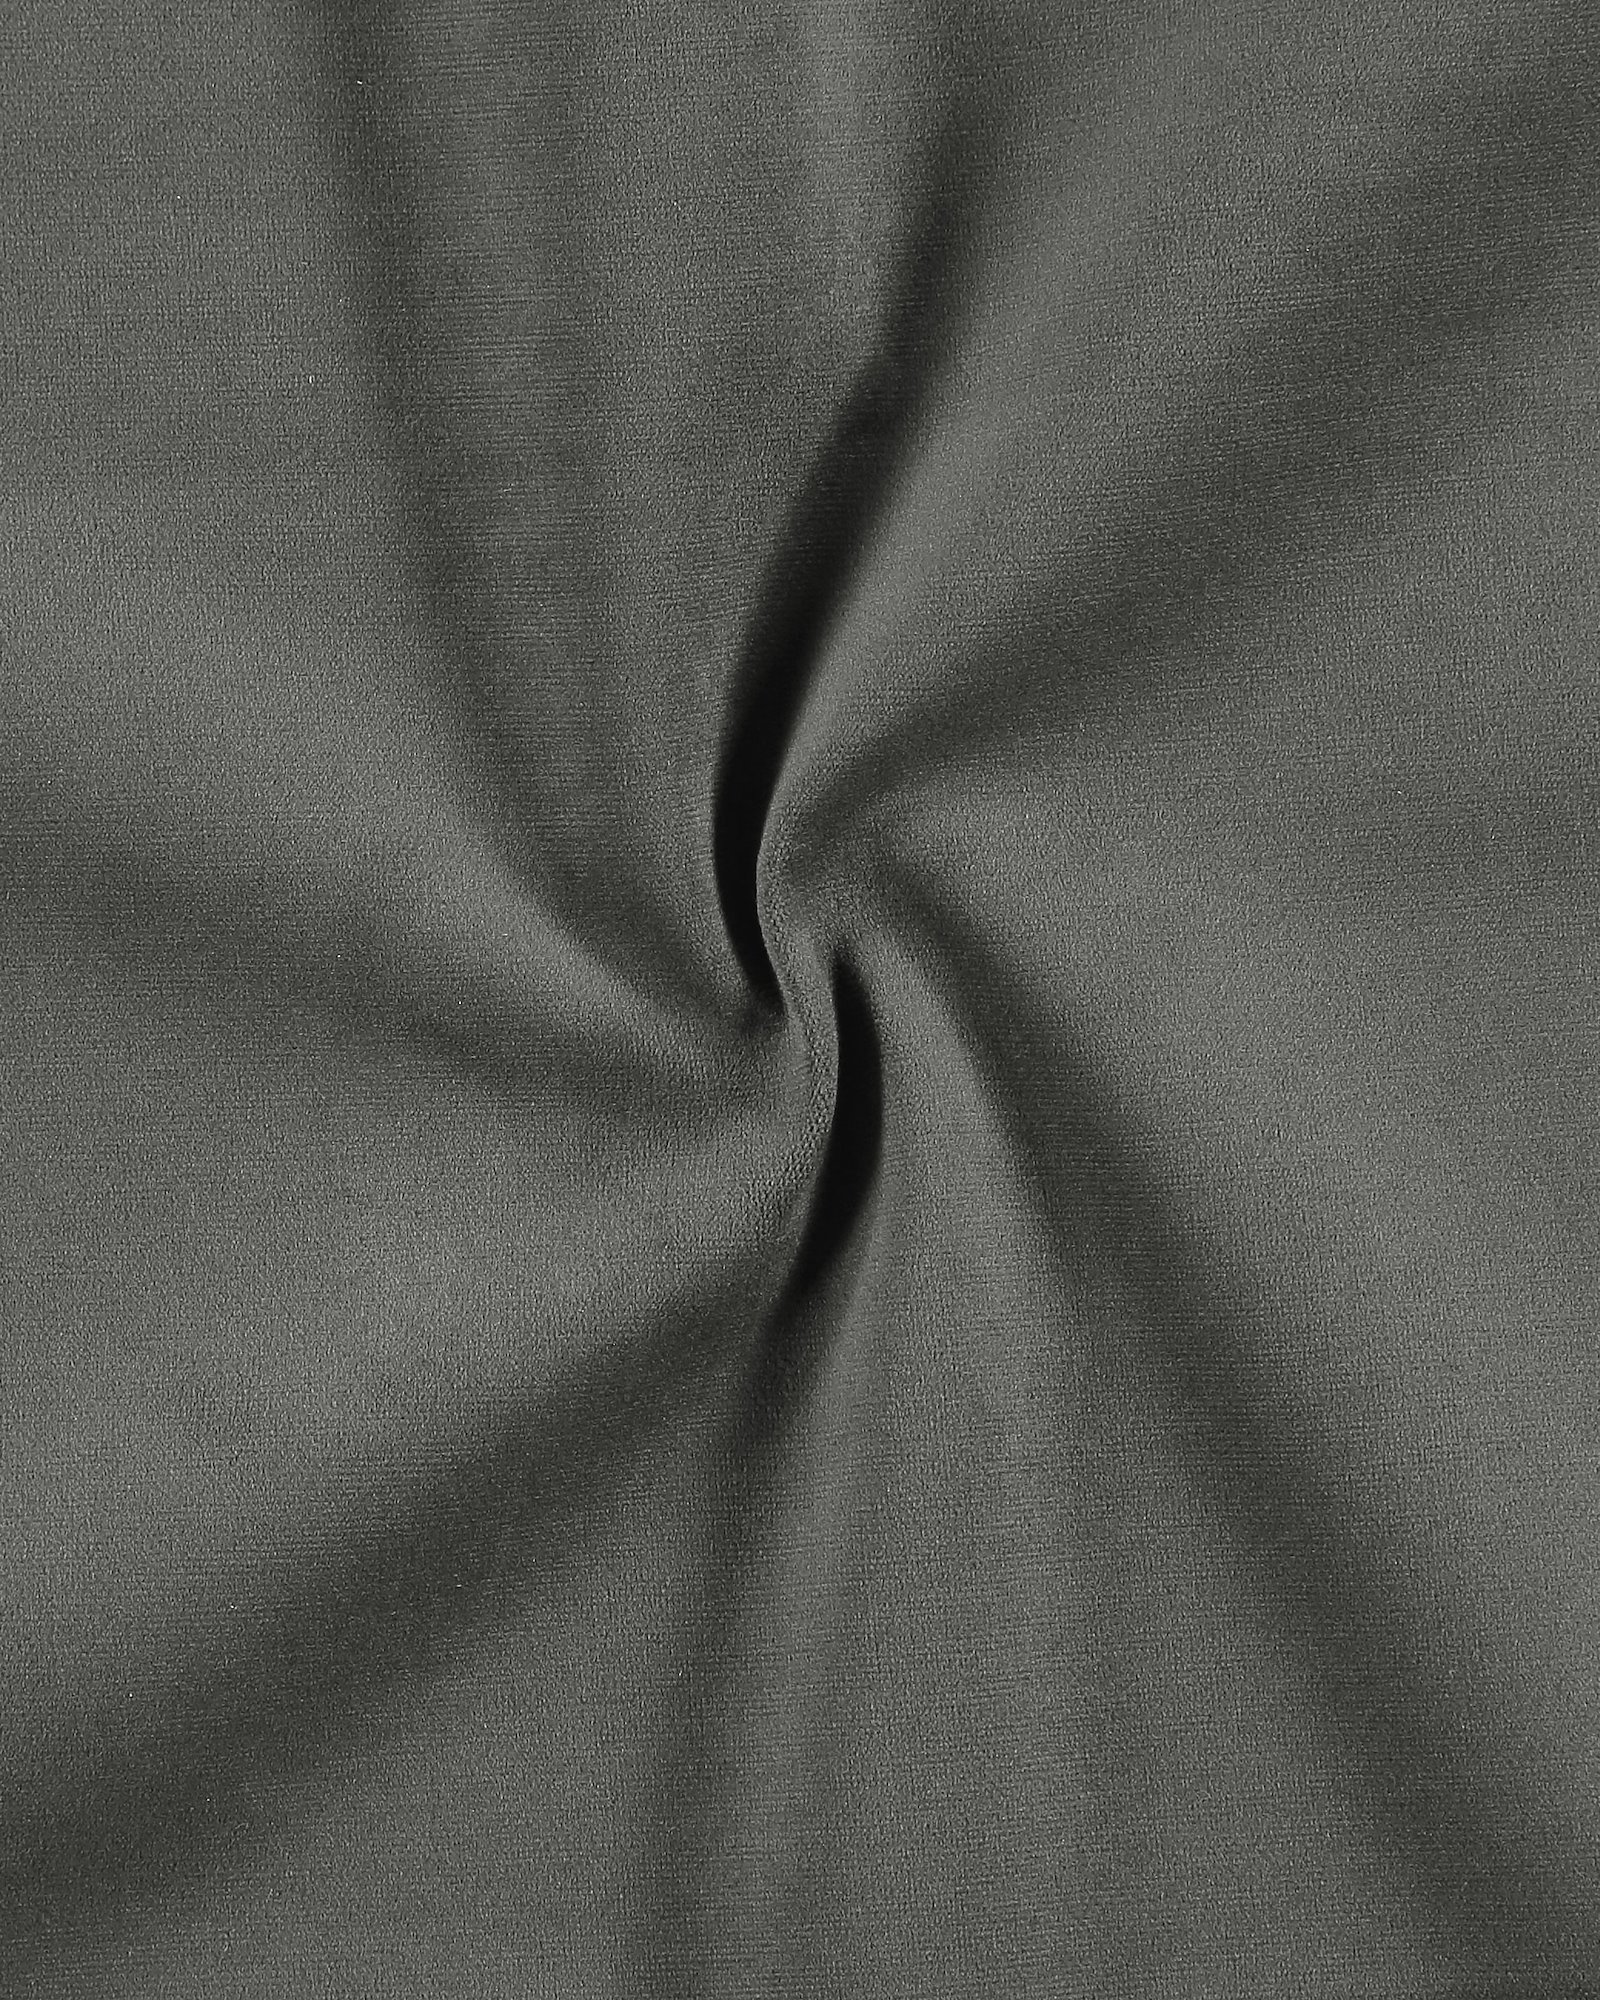 Upholstery velvet dark grey 822228_pack